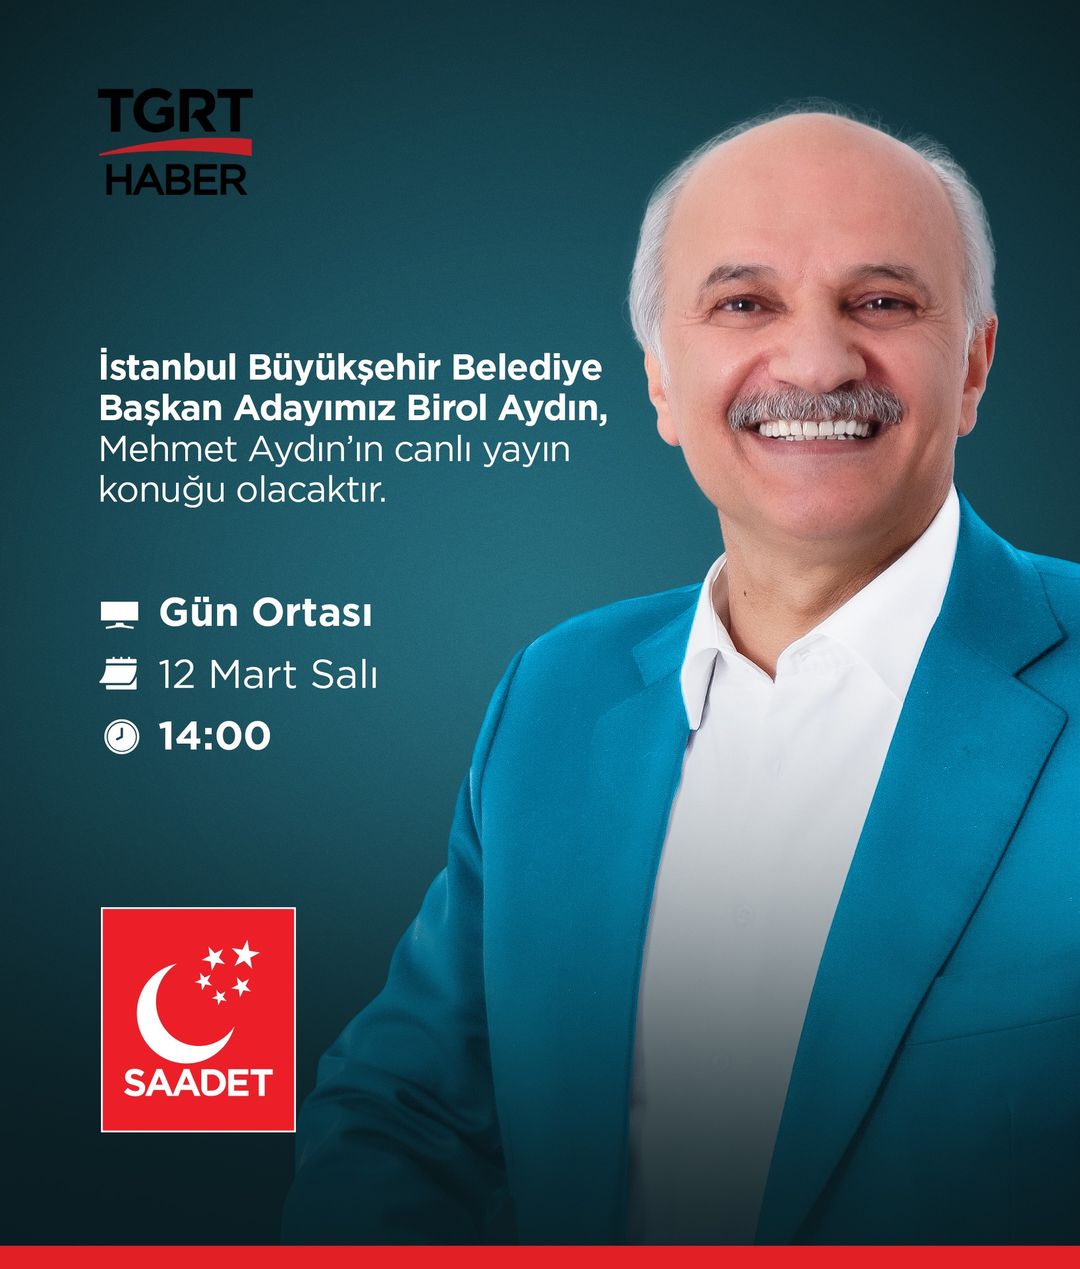 Birol Aydın, Seçmenlerle Buluşuyor: İstanbul Büyükşehir Belediye Başkan Adayı, Önemli Bir TV Programına Konuk Olacak